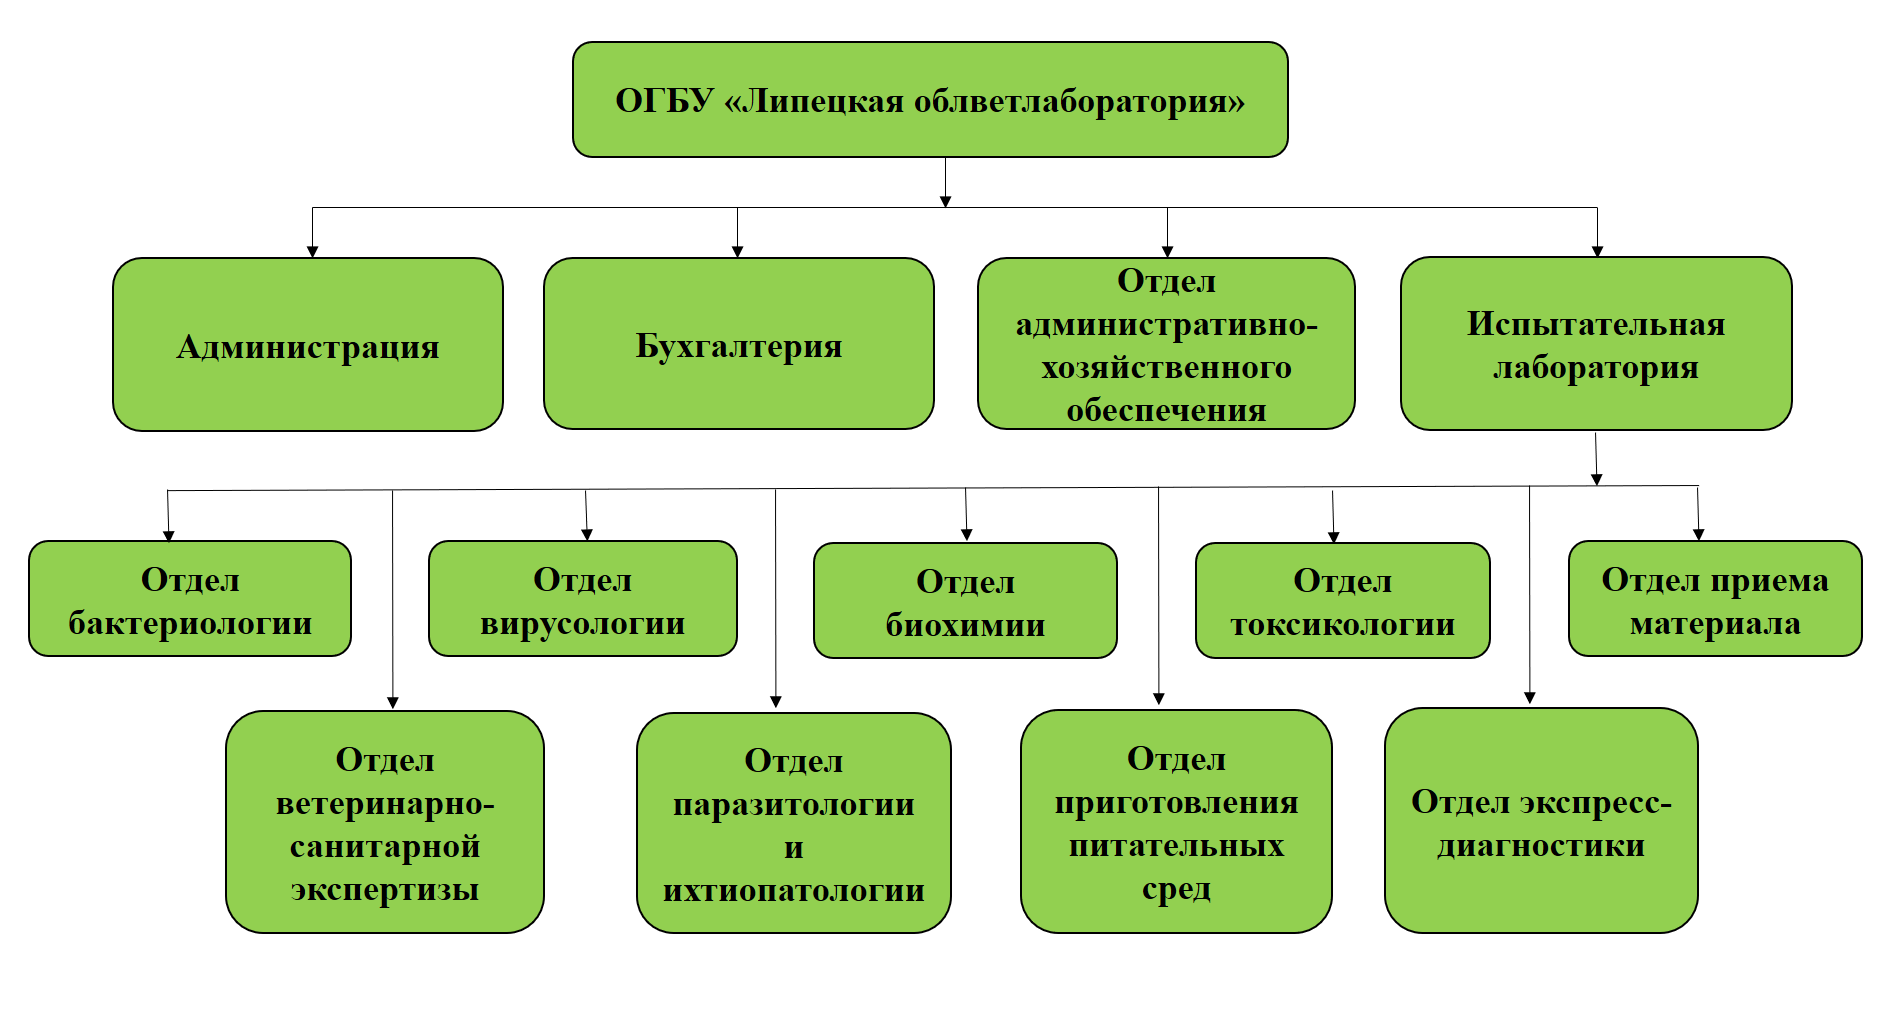 Структура ОГБУ